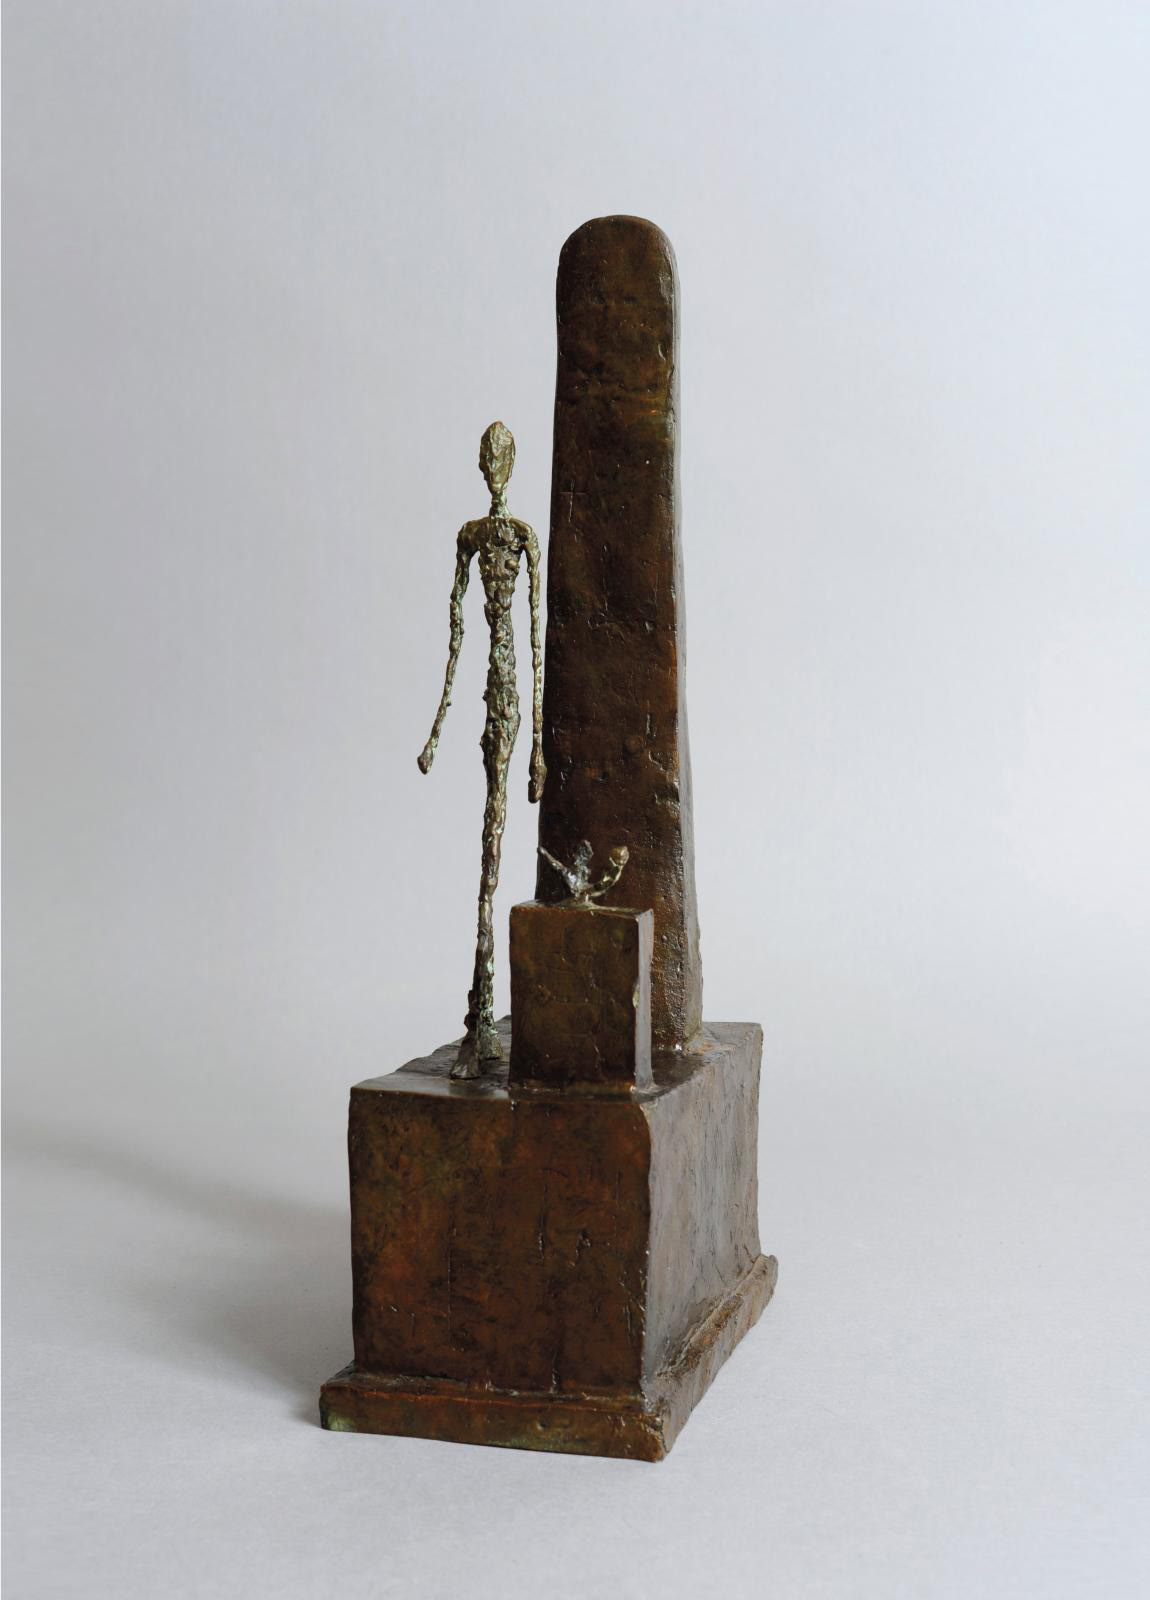 Alberto Giacometti (1907-1966), L’Homme qui marche, 1957, bronze, 39.1 x 10.9 x 18,6 cm/15.39 x 4.29 x 7.32 in.COURTESY GALERIE MICHEL GIR